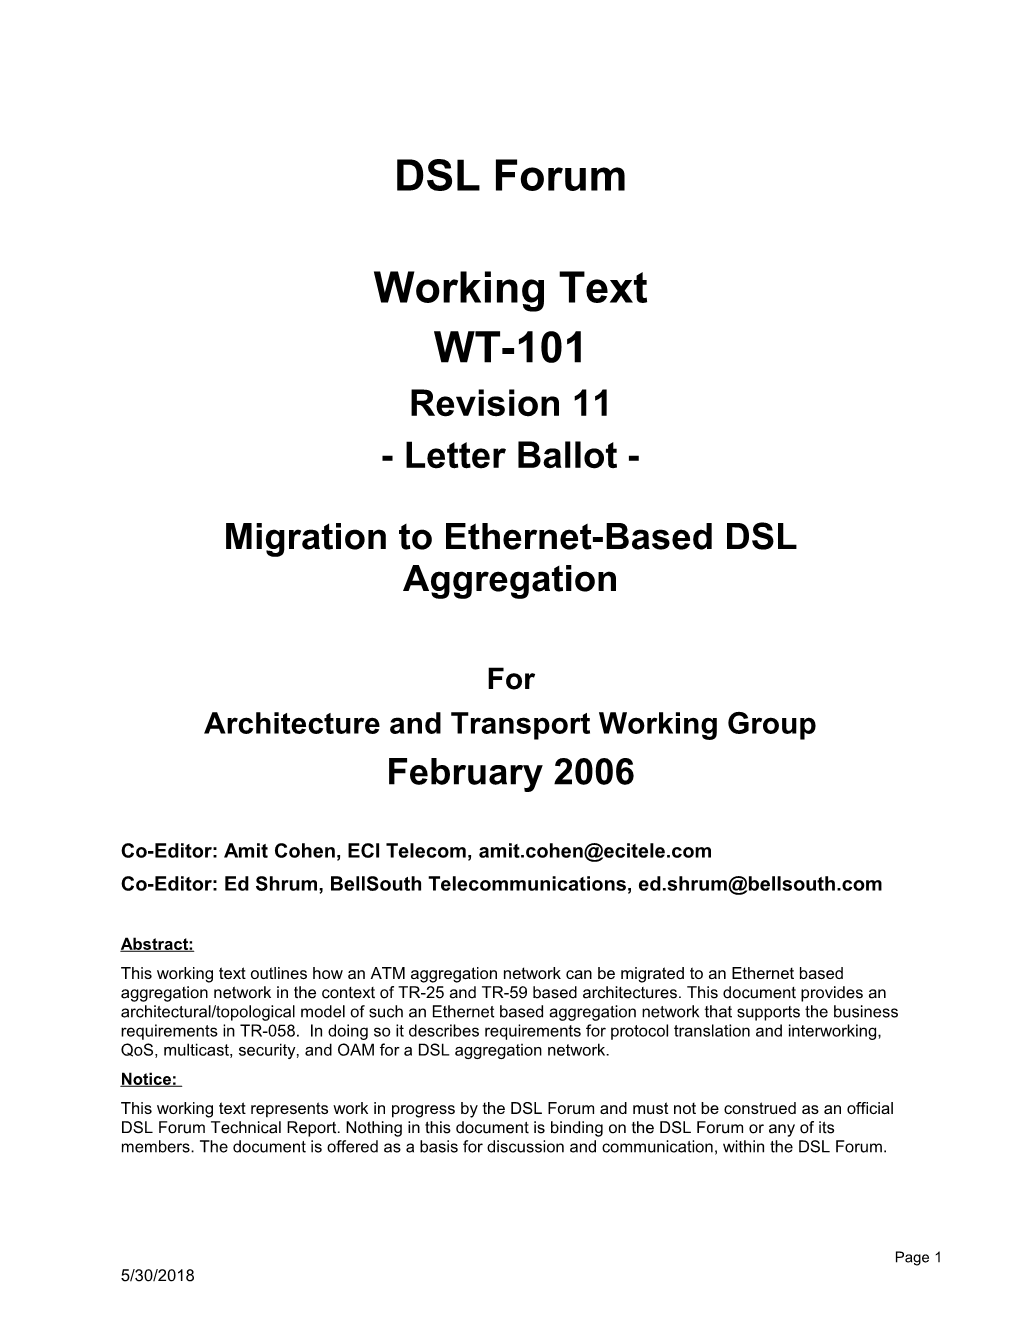 Migration to Ethernet Based DSL Aggregation